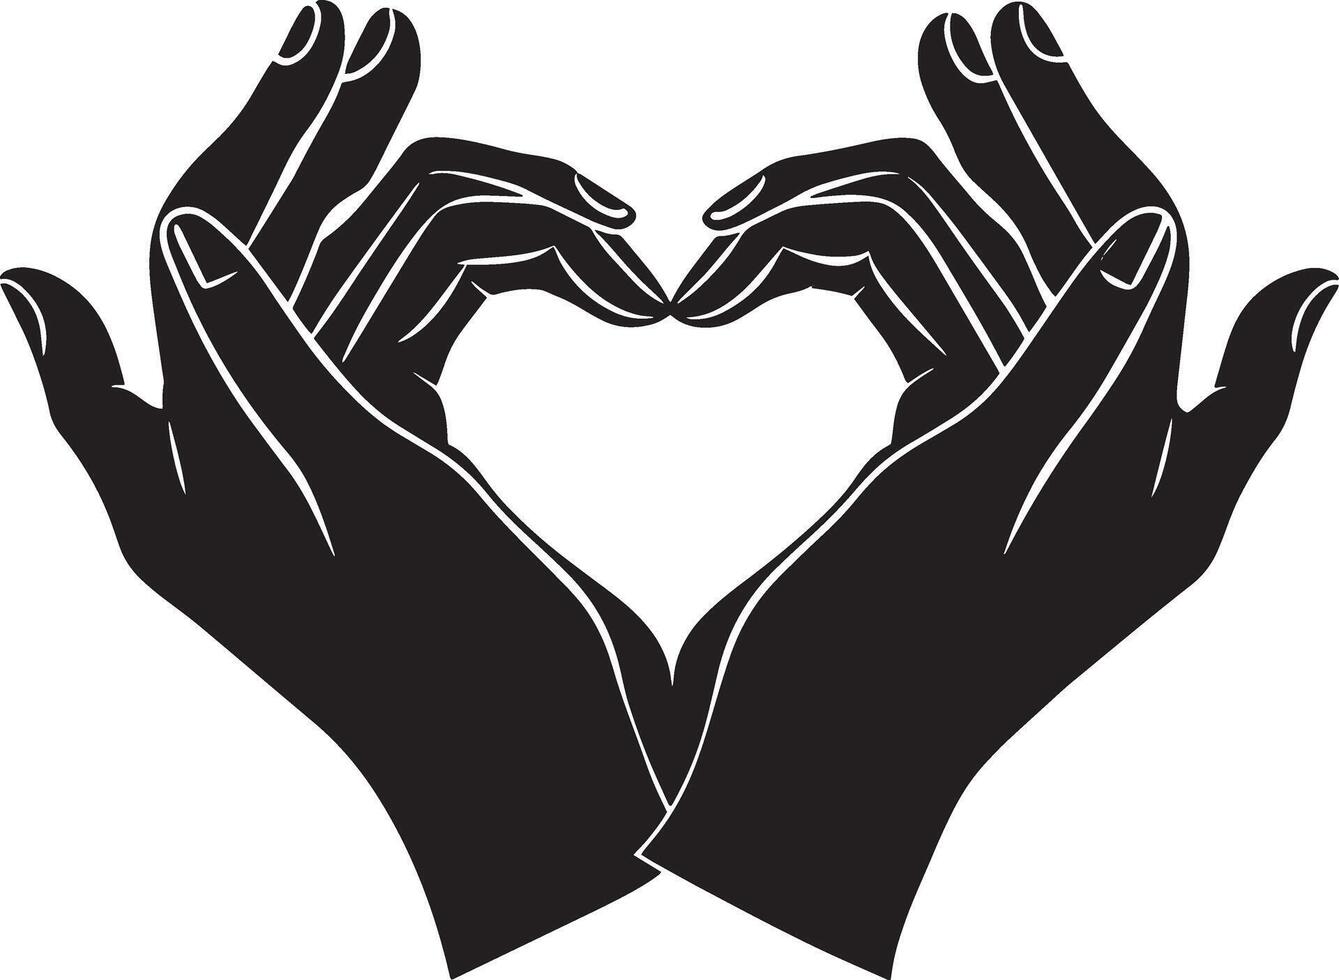 negro y blanco ilustración de manos formando un corazón forma con su dedos. vector